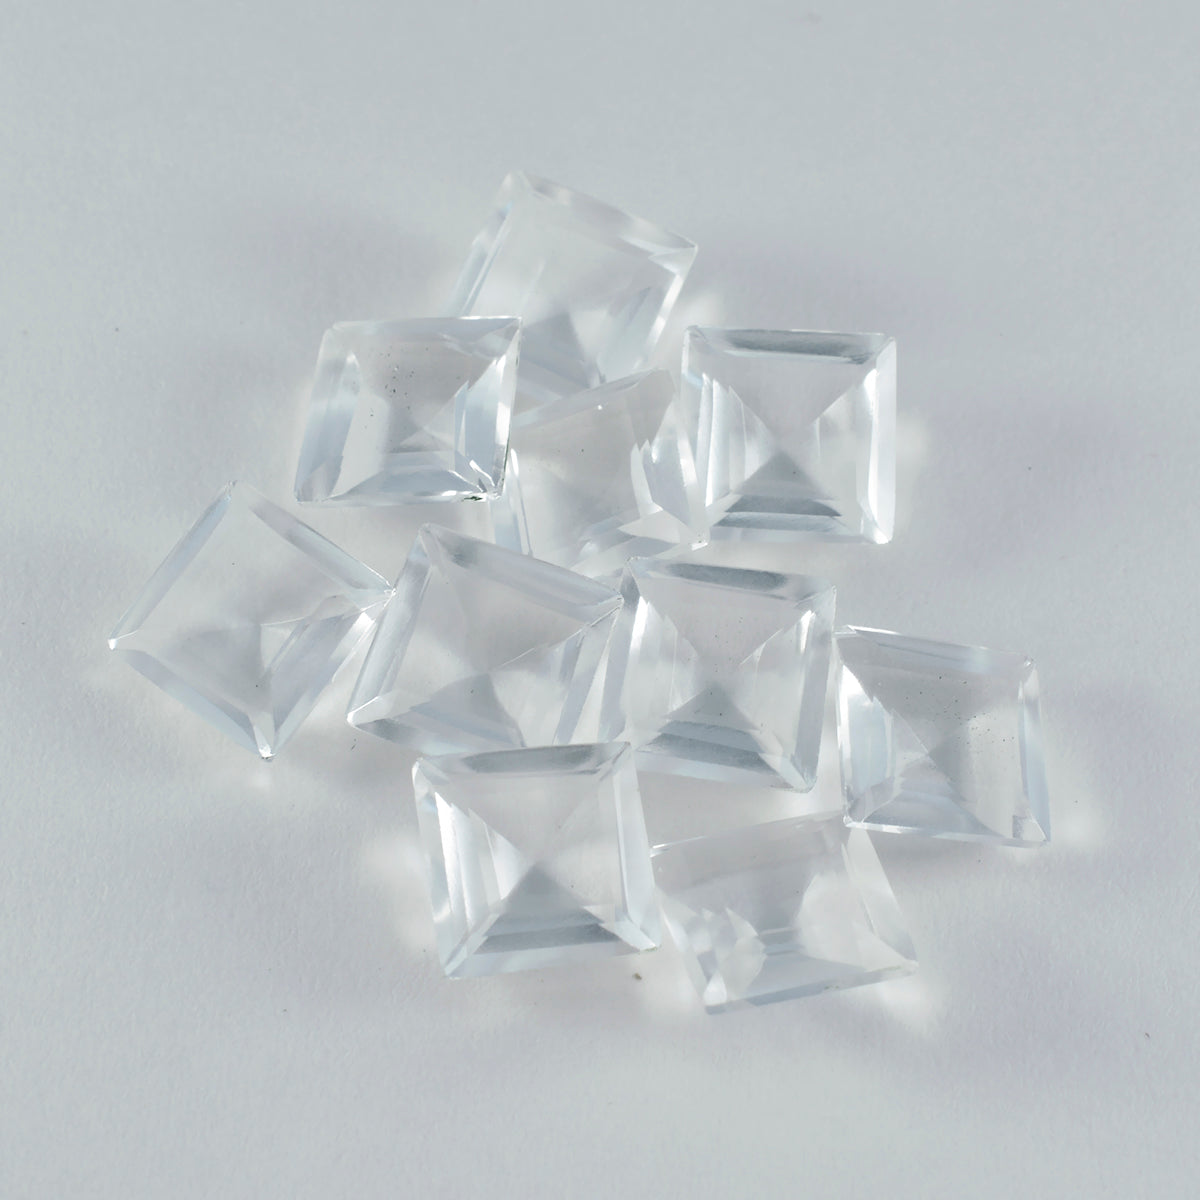 Riyogems 1PC wit kristalkwarts gefacetteerd 12x12 mm vierkante vorm mooie kwaliteit losse edelsteen